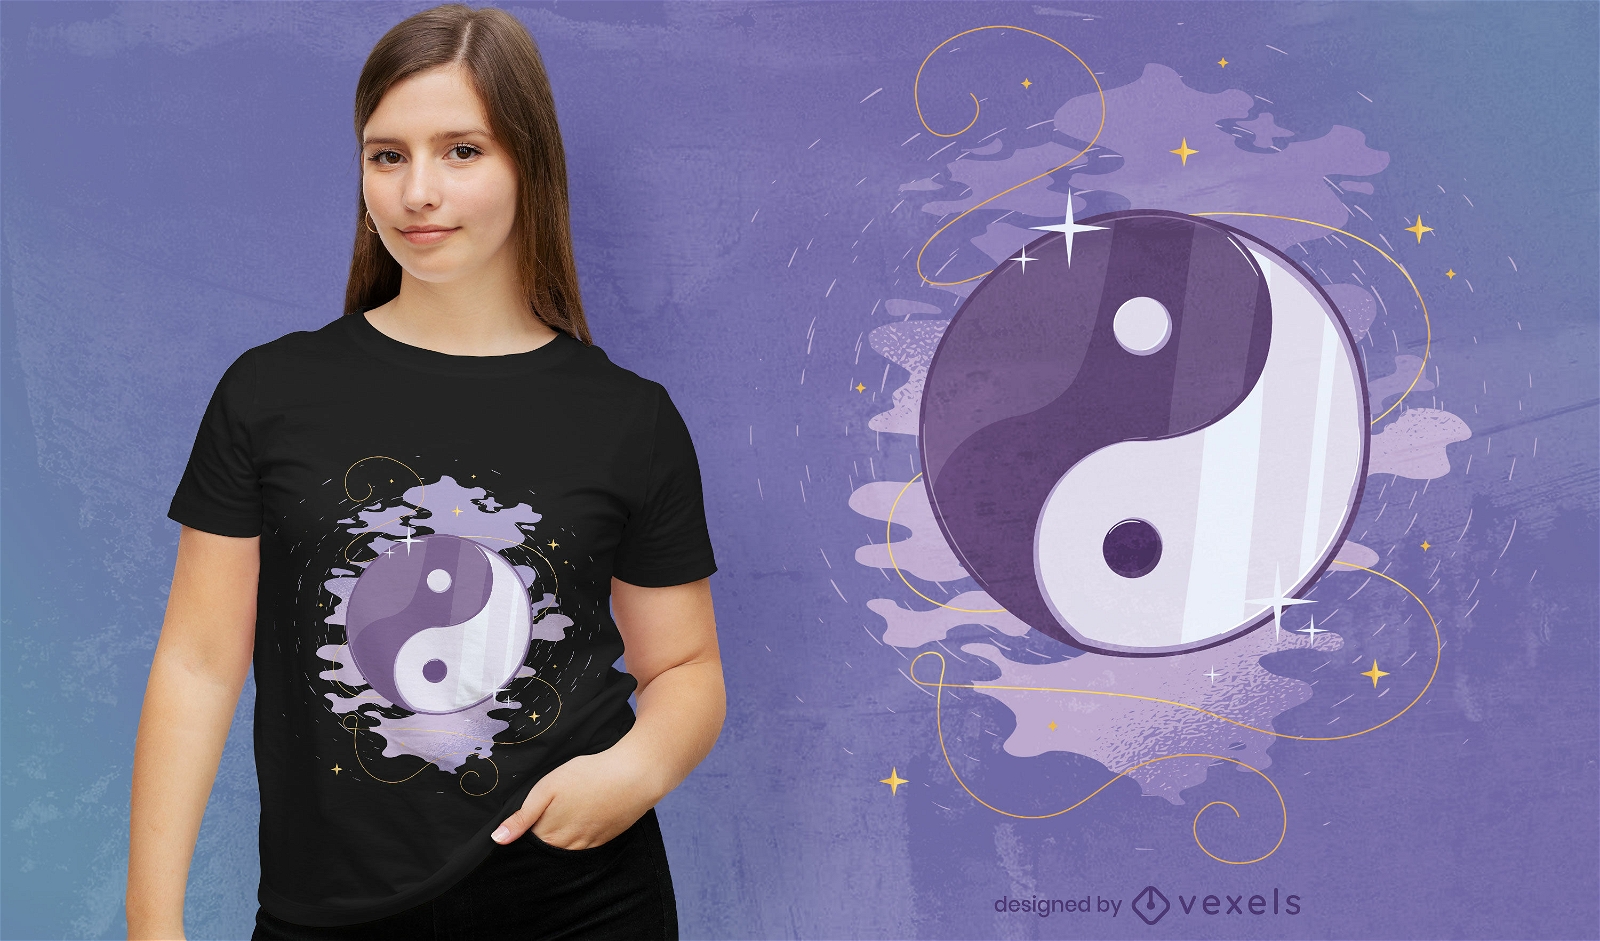 Design de camiseta com símbolo místico de Yin yang